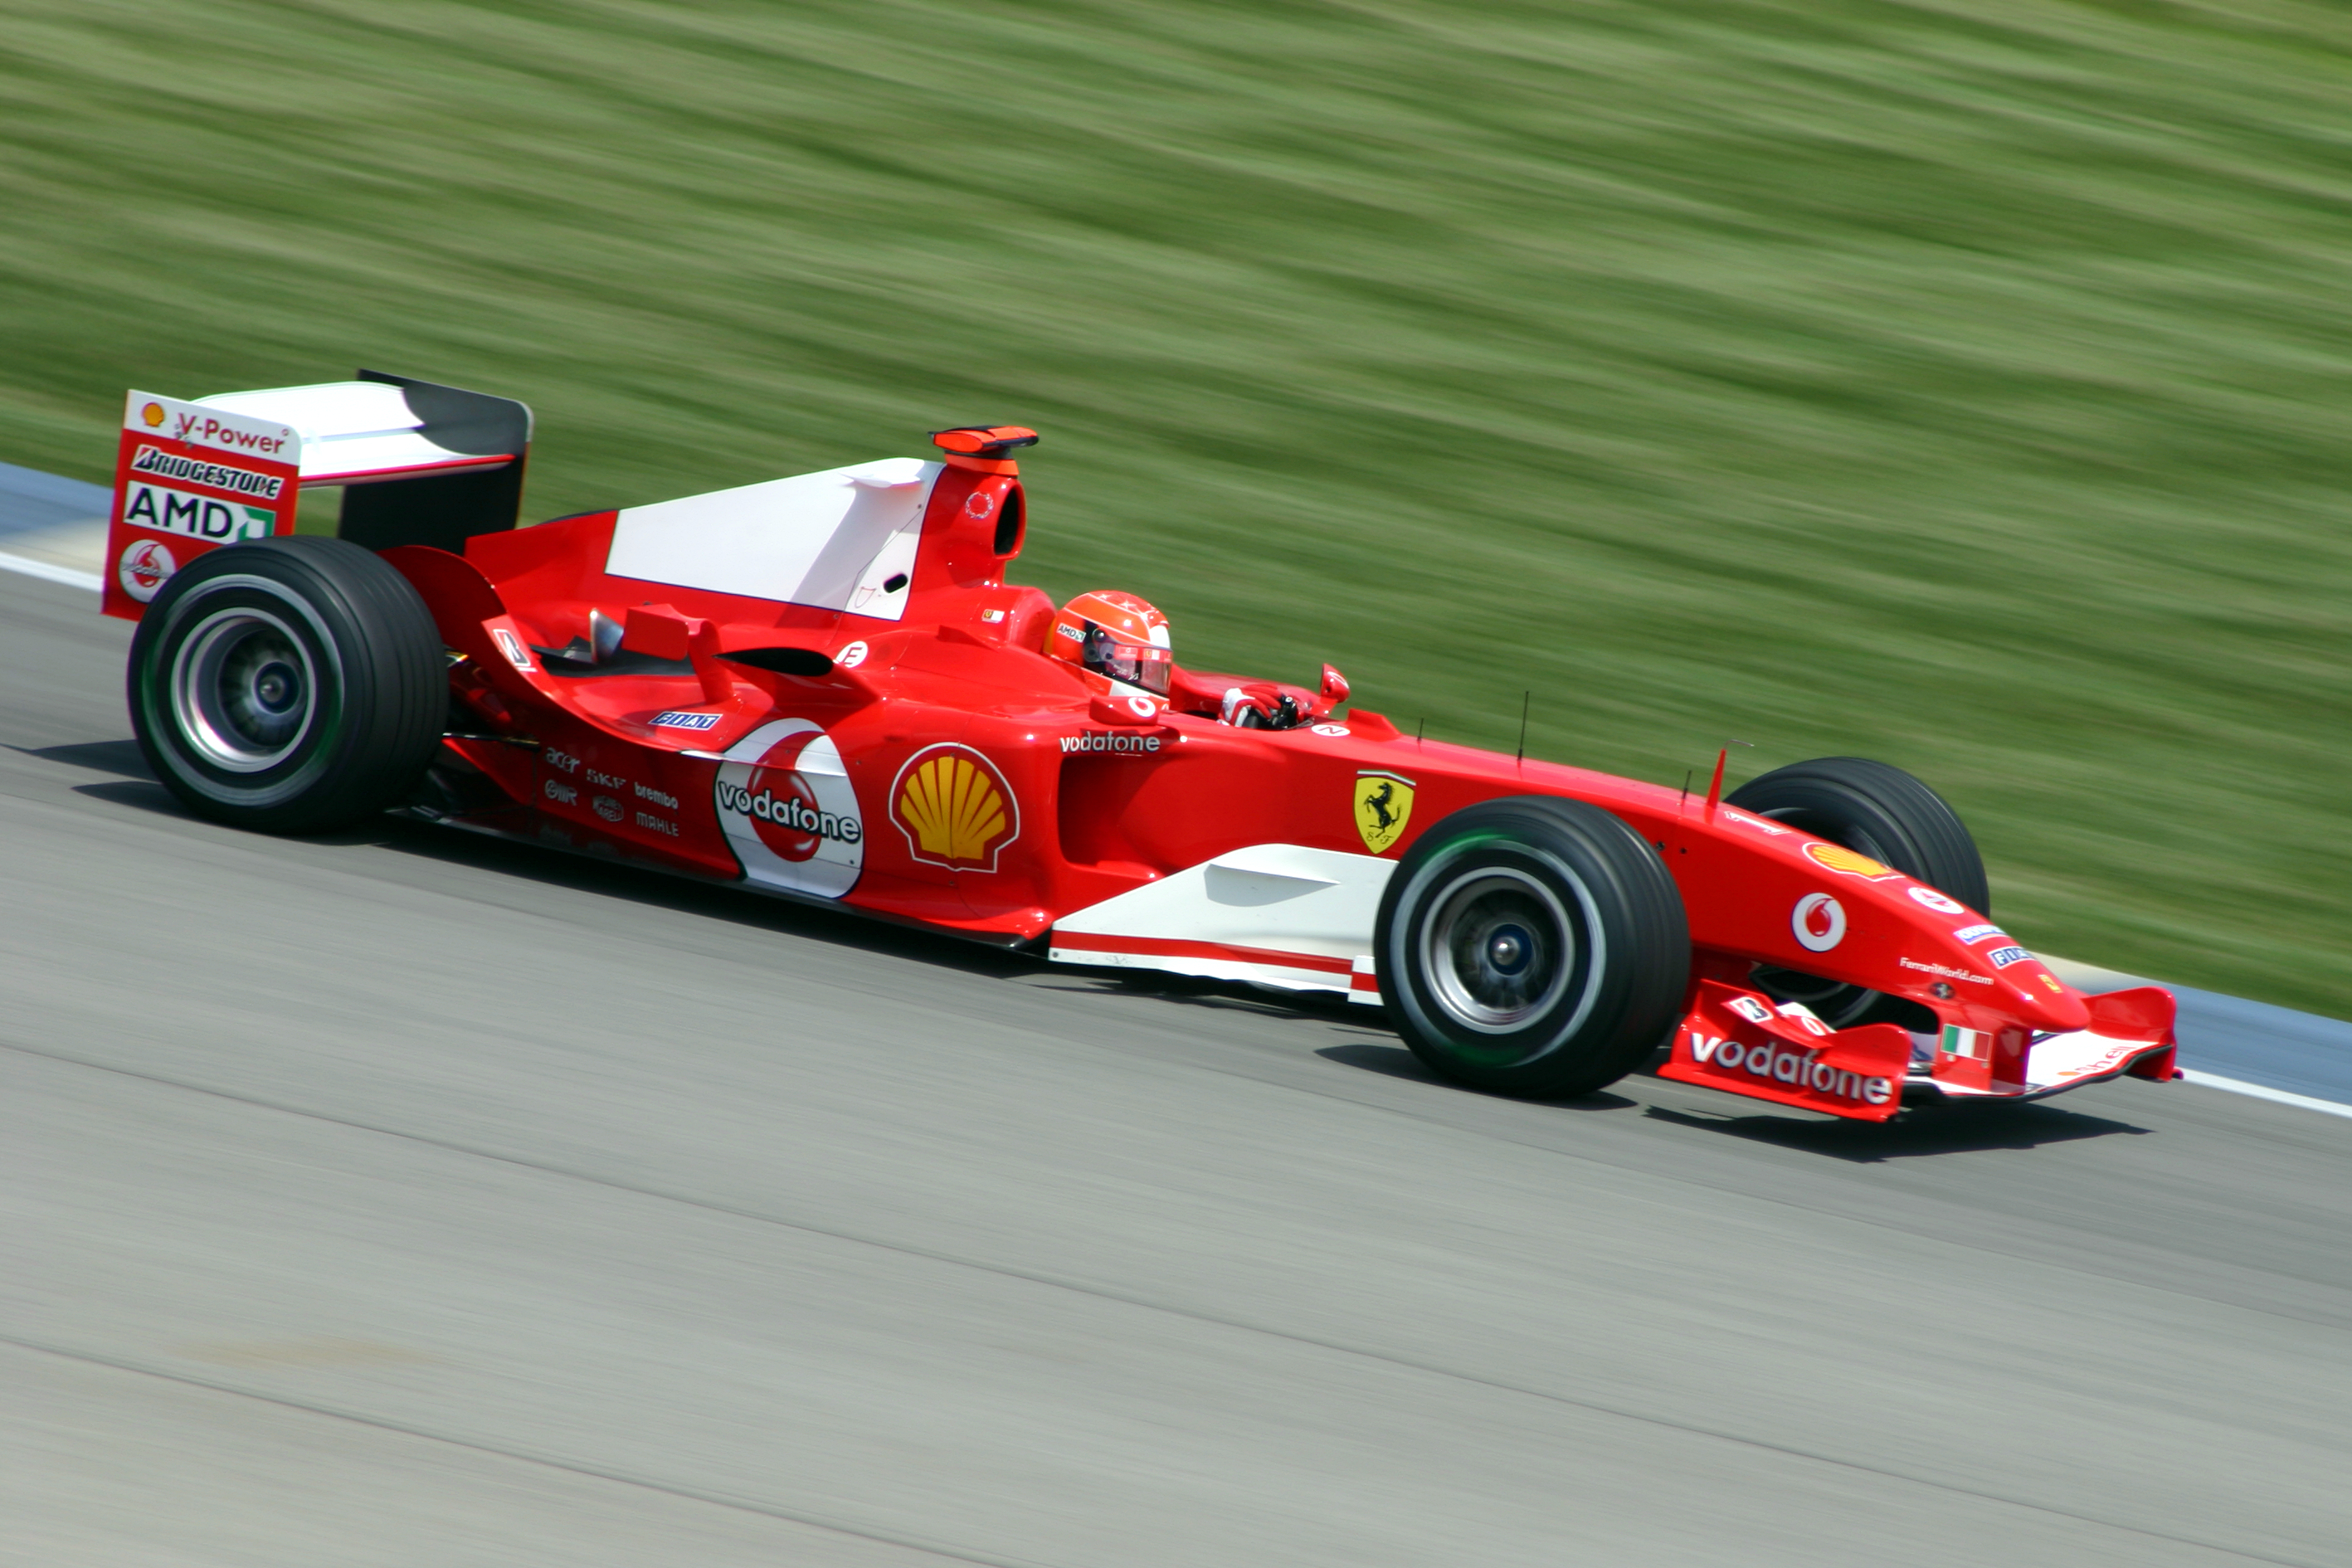 18-04-21 Michael_Schumacher_Ferrari_2004.jpg